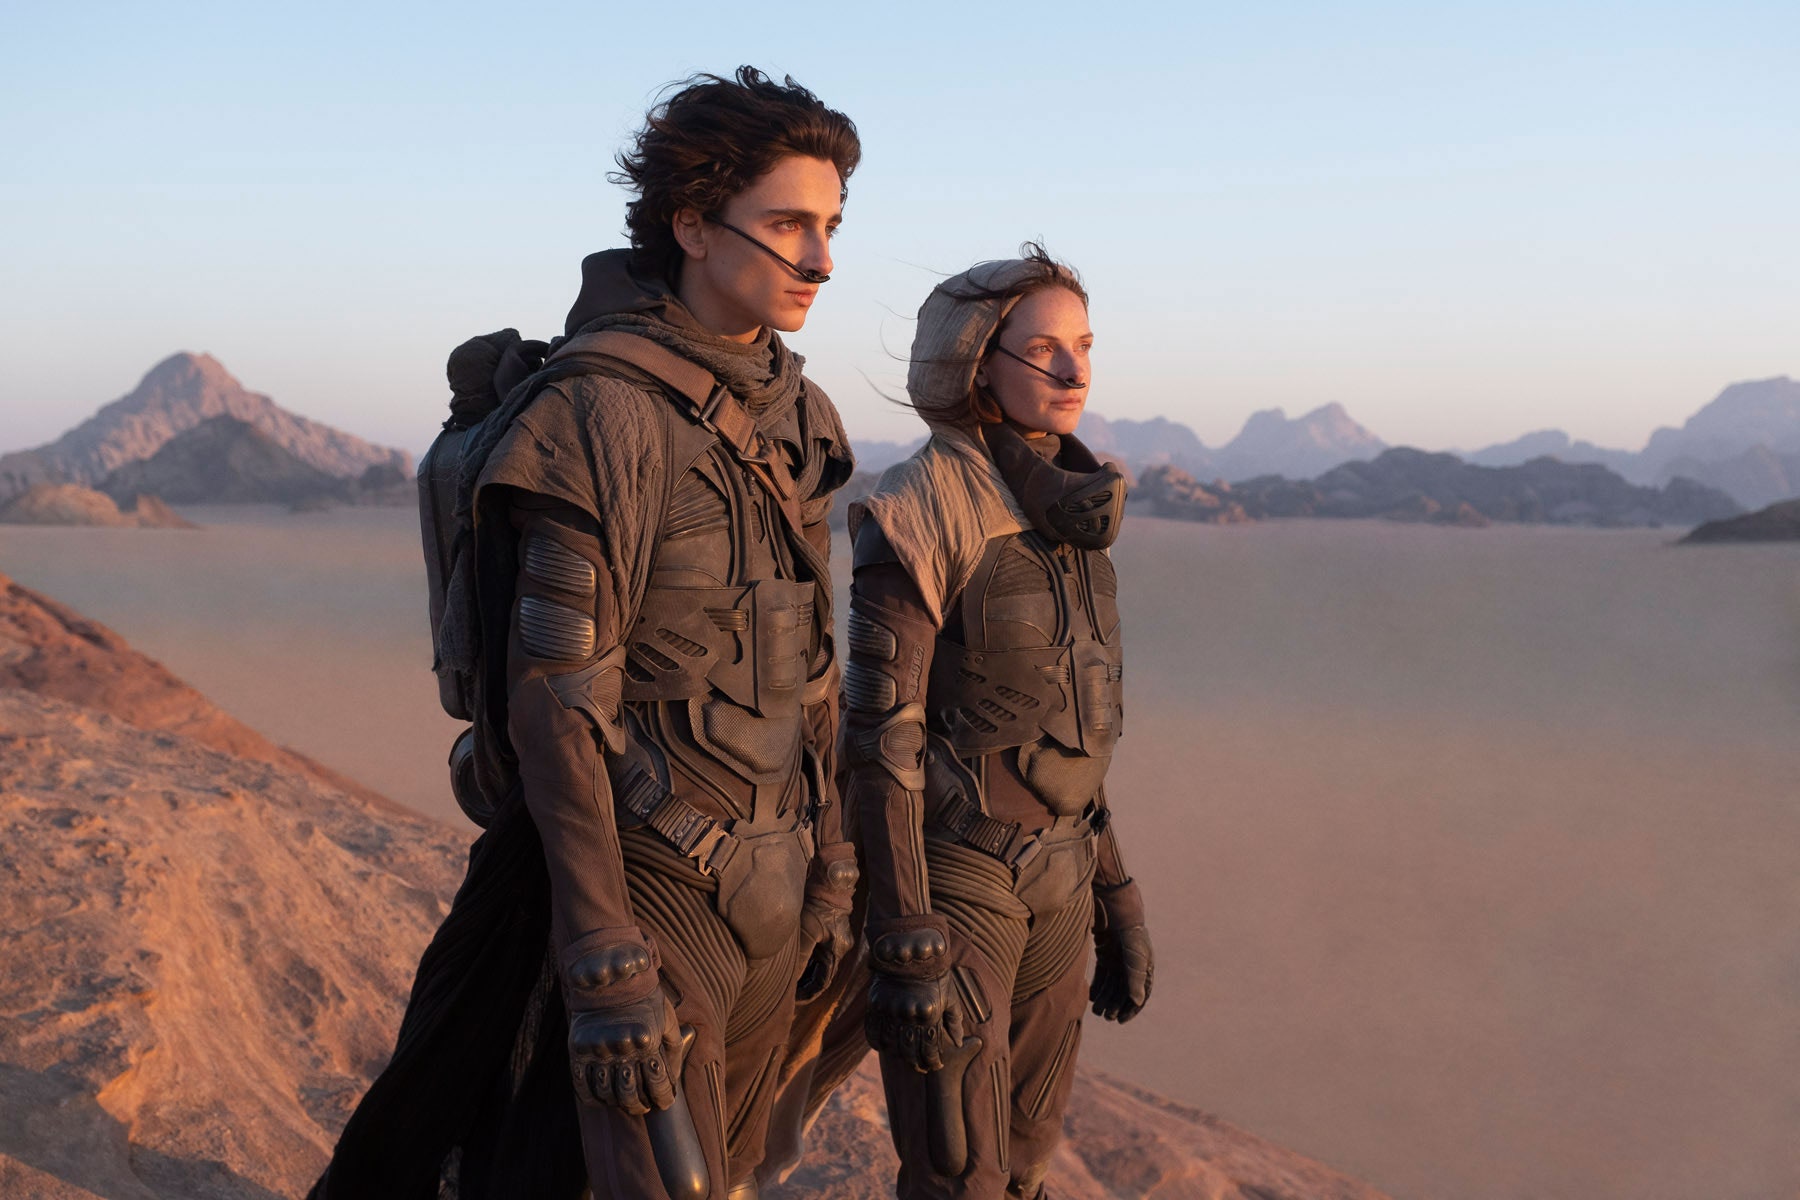 Le film Dune de Denis Villeneuve repoussé à octobre 2021